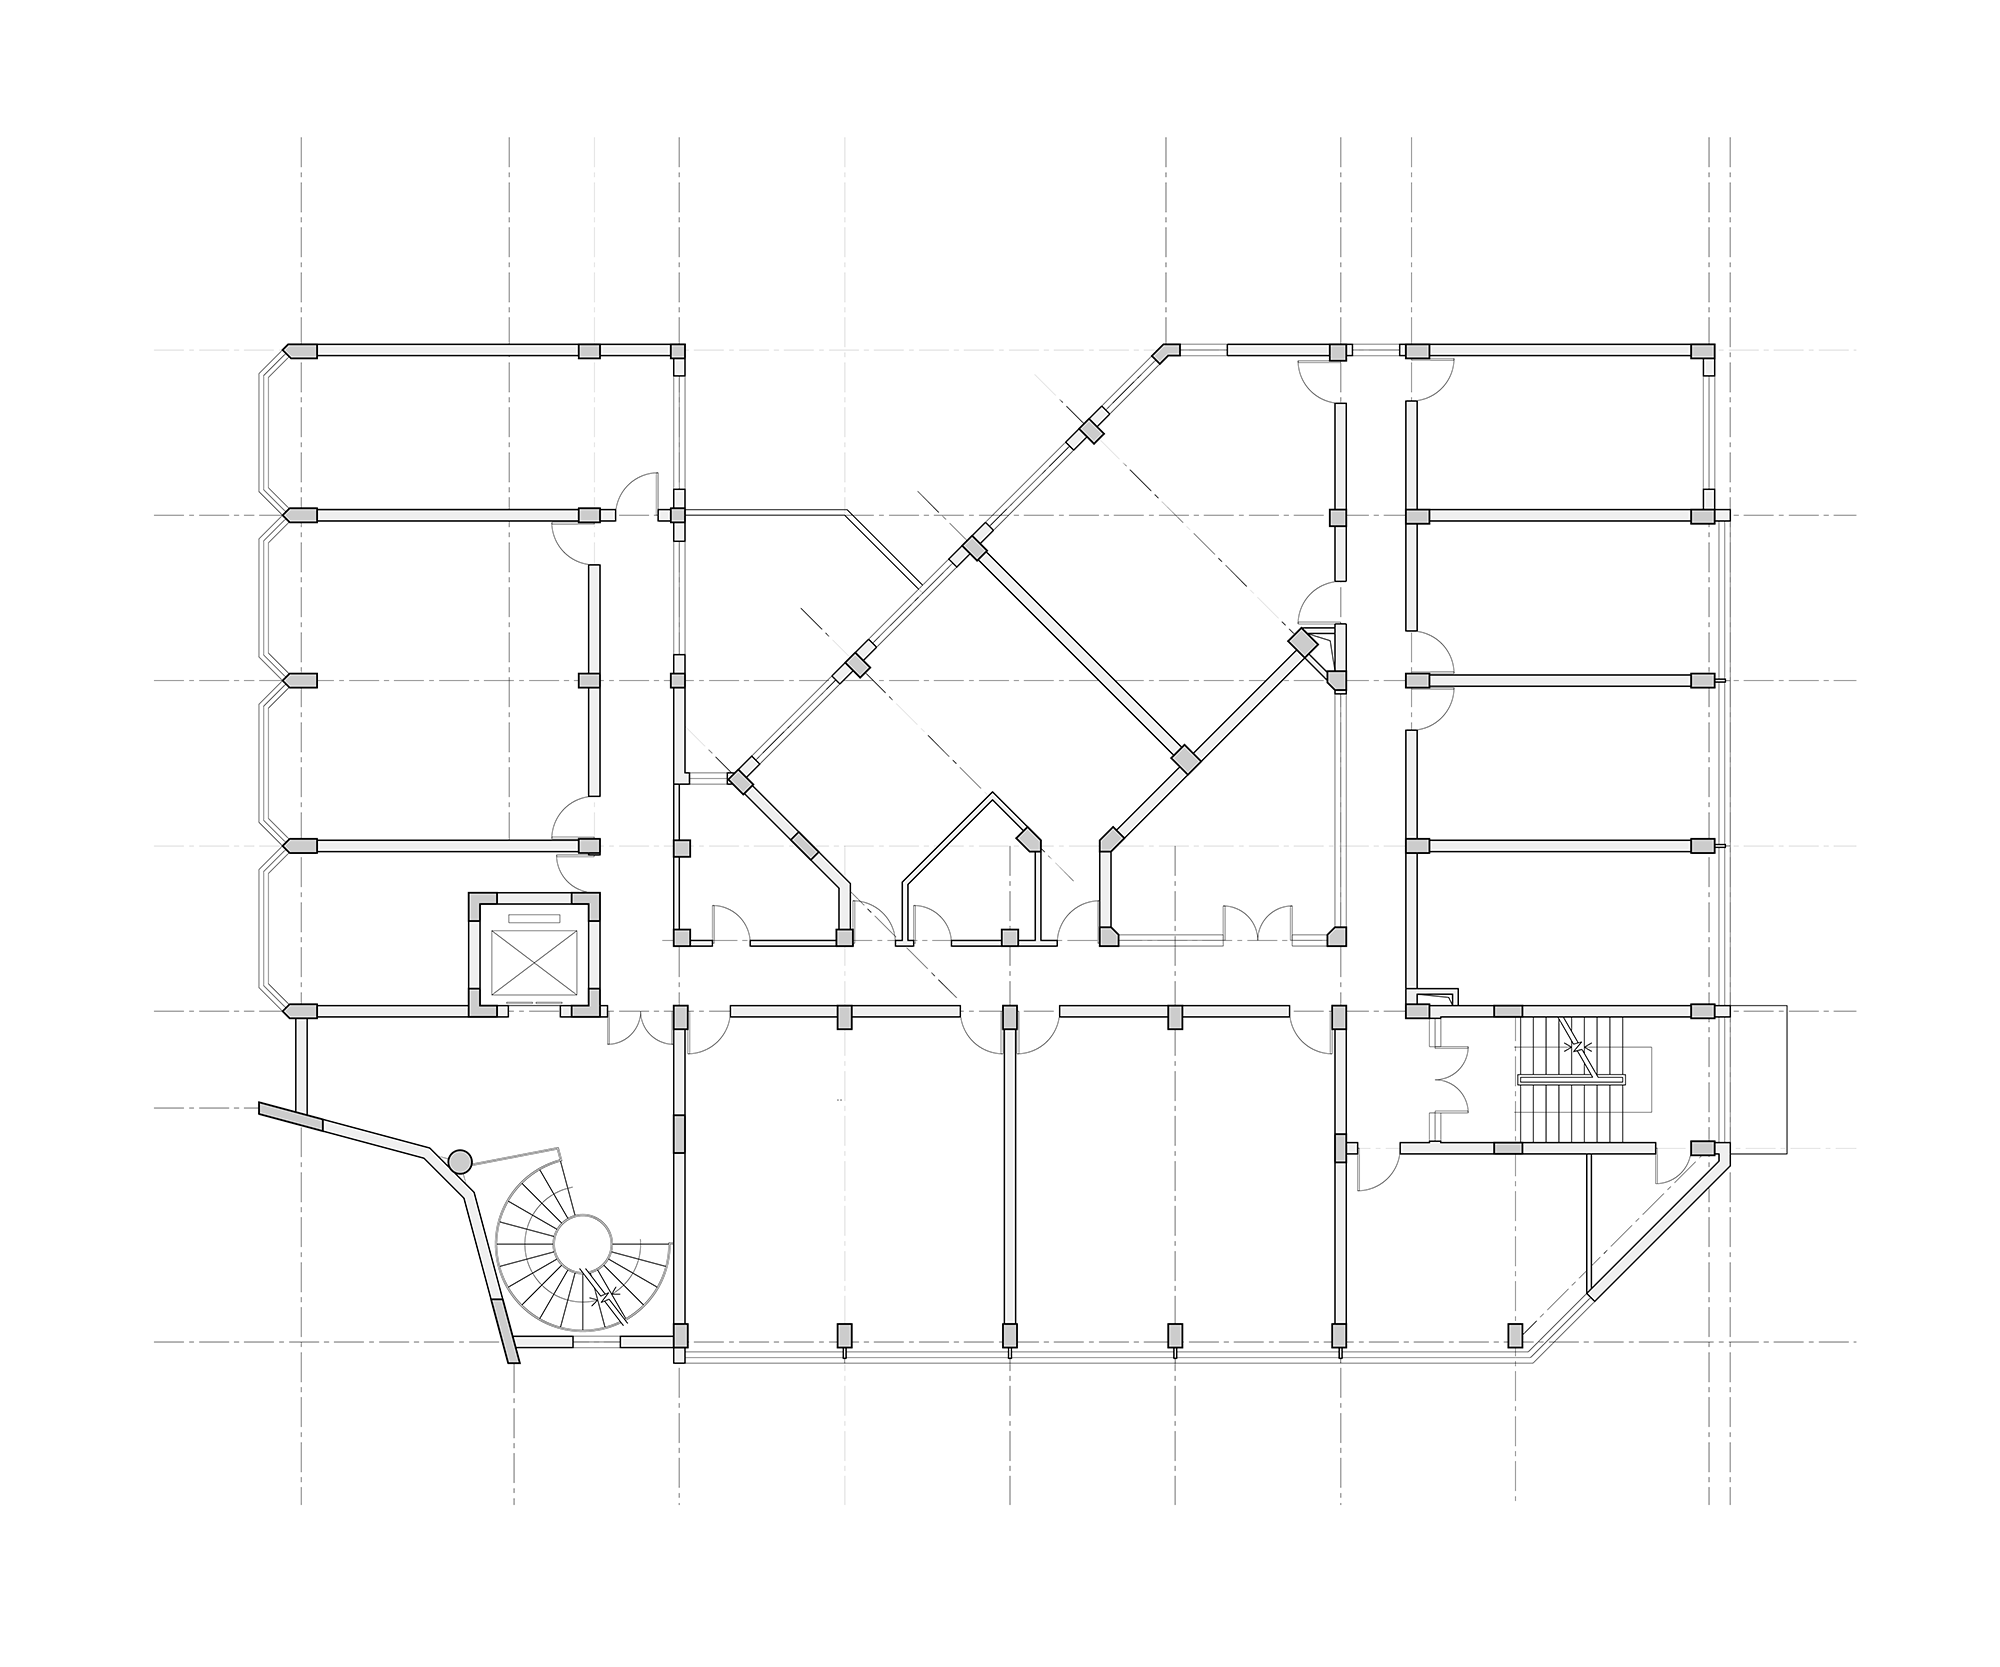 04 原平面图 typical floor plan_old.png